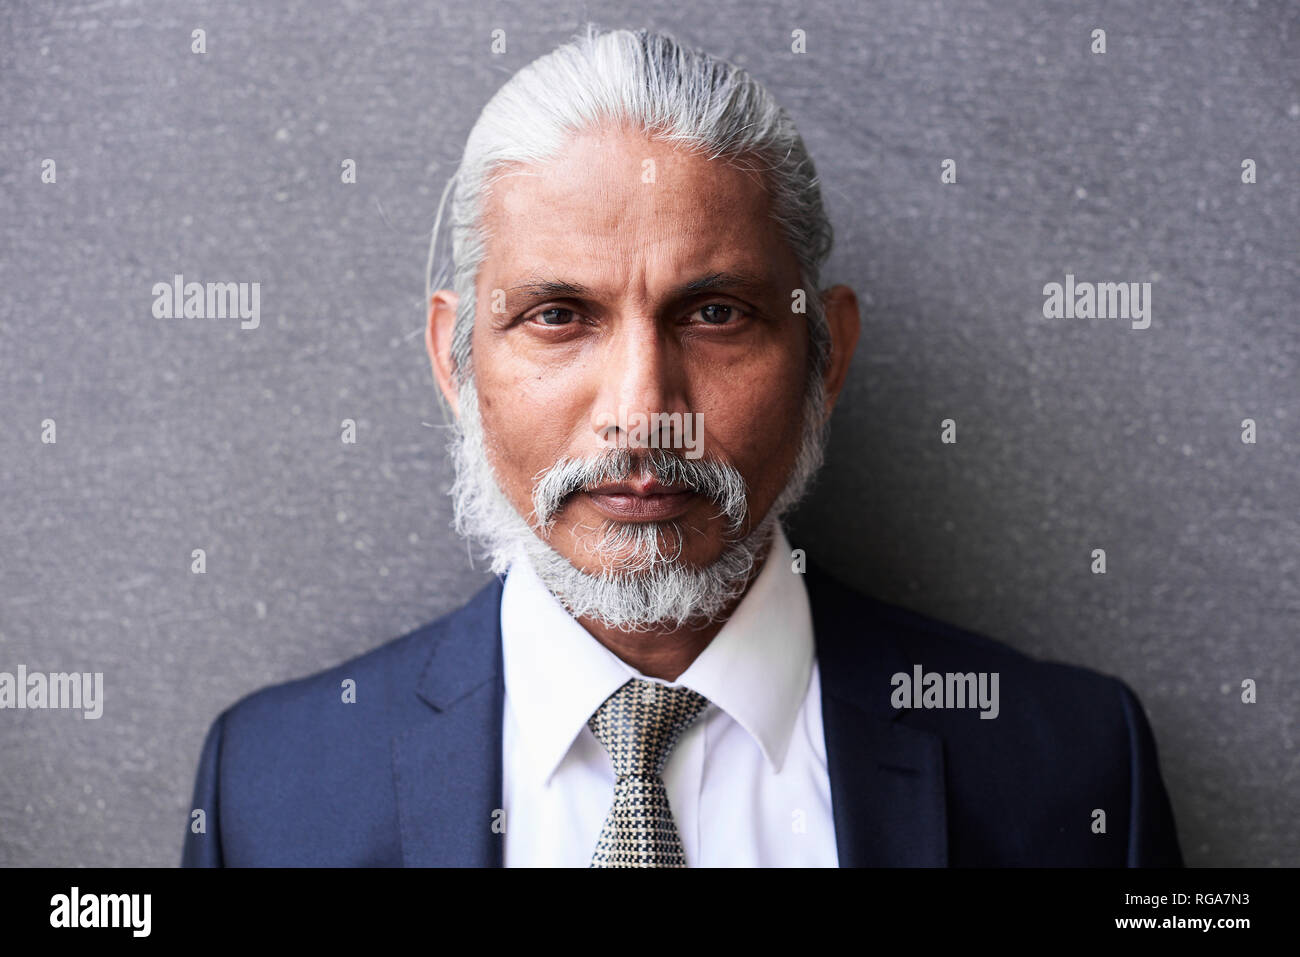 Portrait von älteren Geschäftsmann mit grauem Haar und Bart Stockfoto